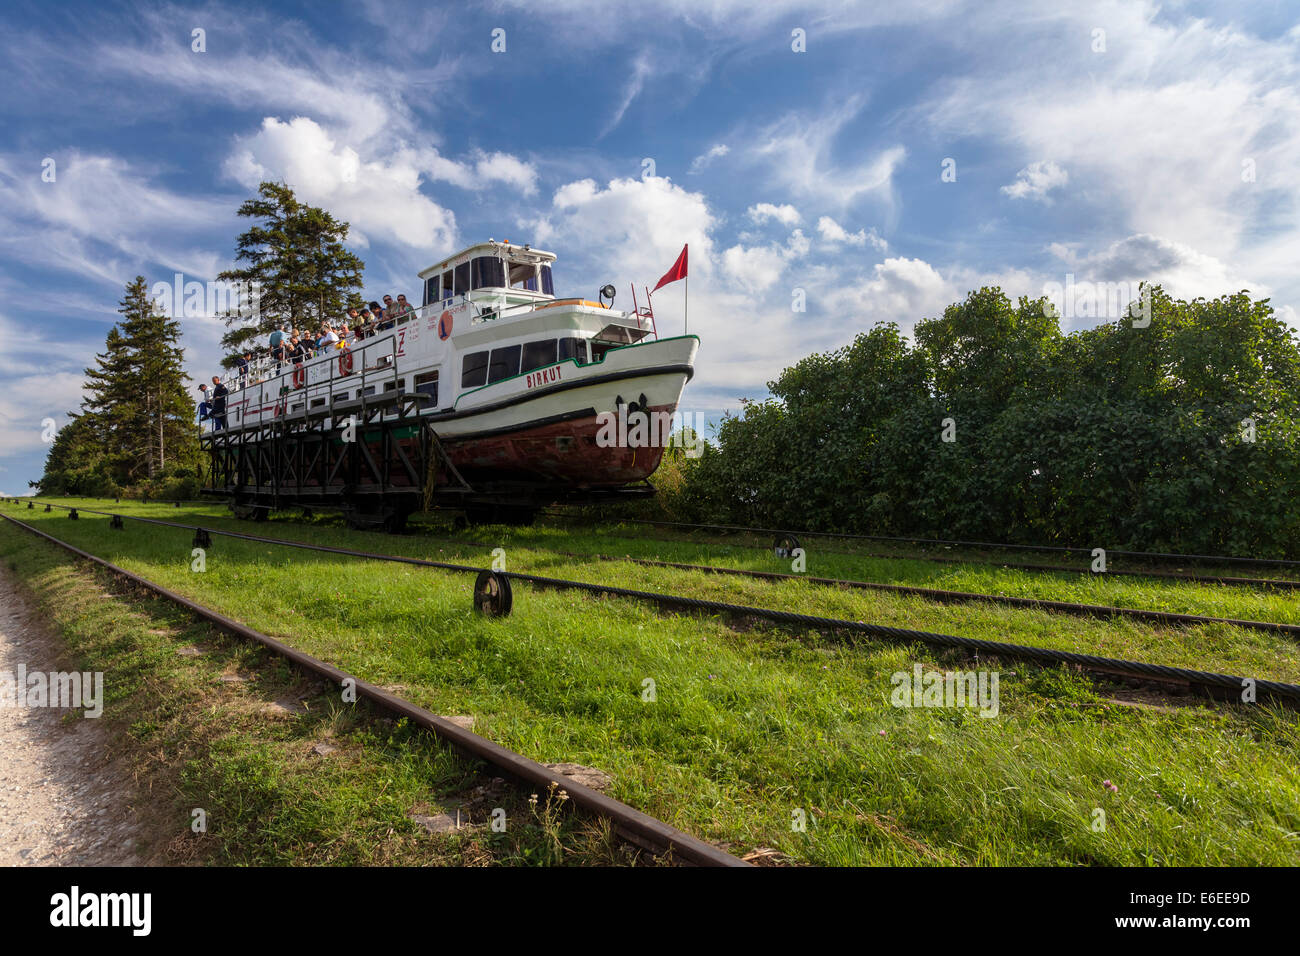 Tourist ship, water ramp Jelenie, Elblaski Canal Poland Stock Photo